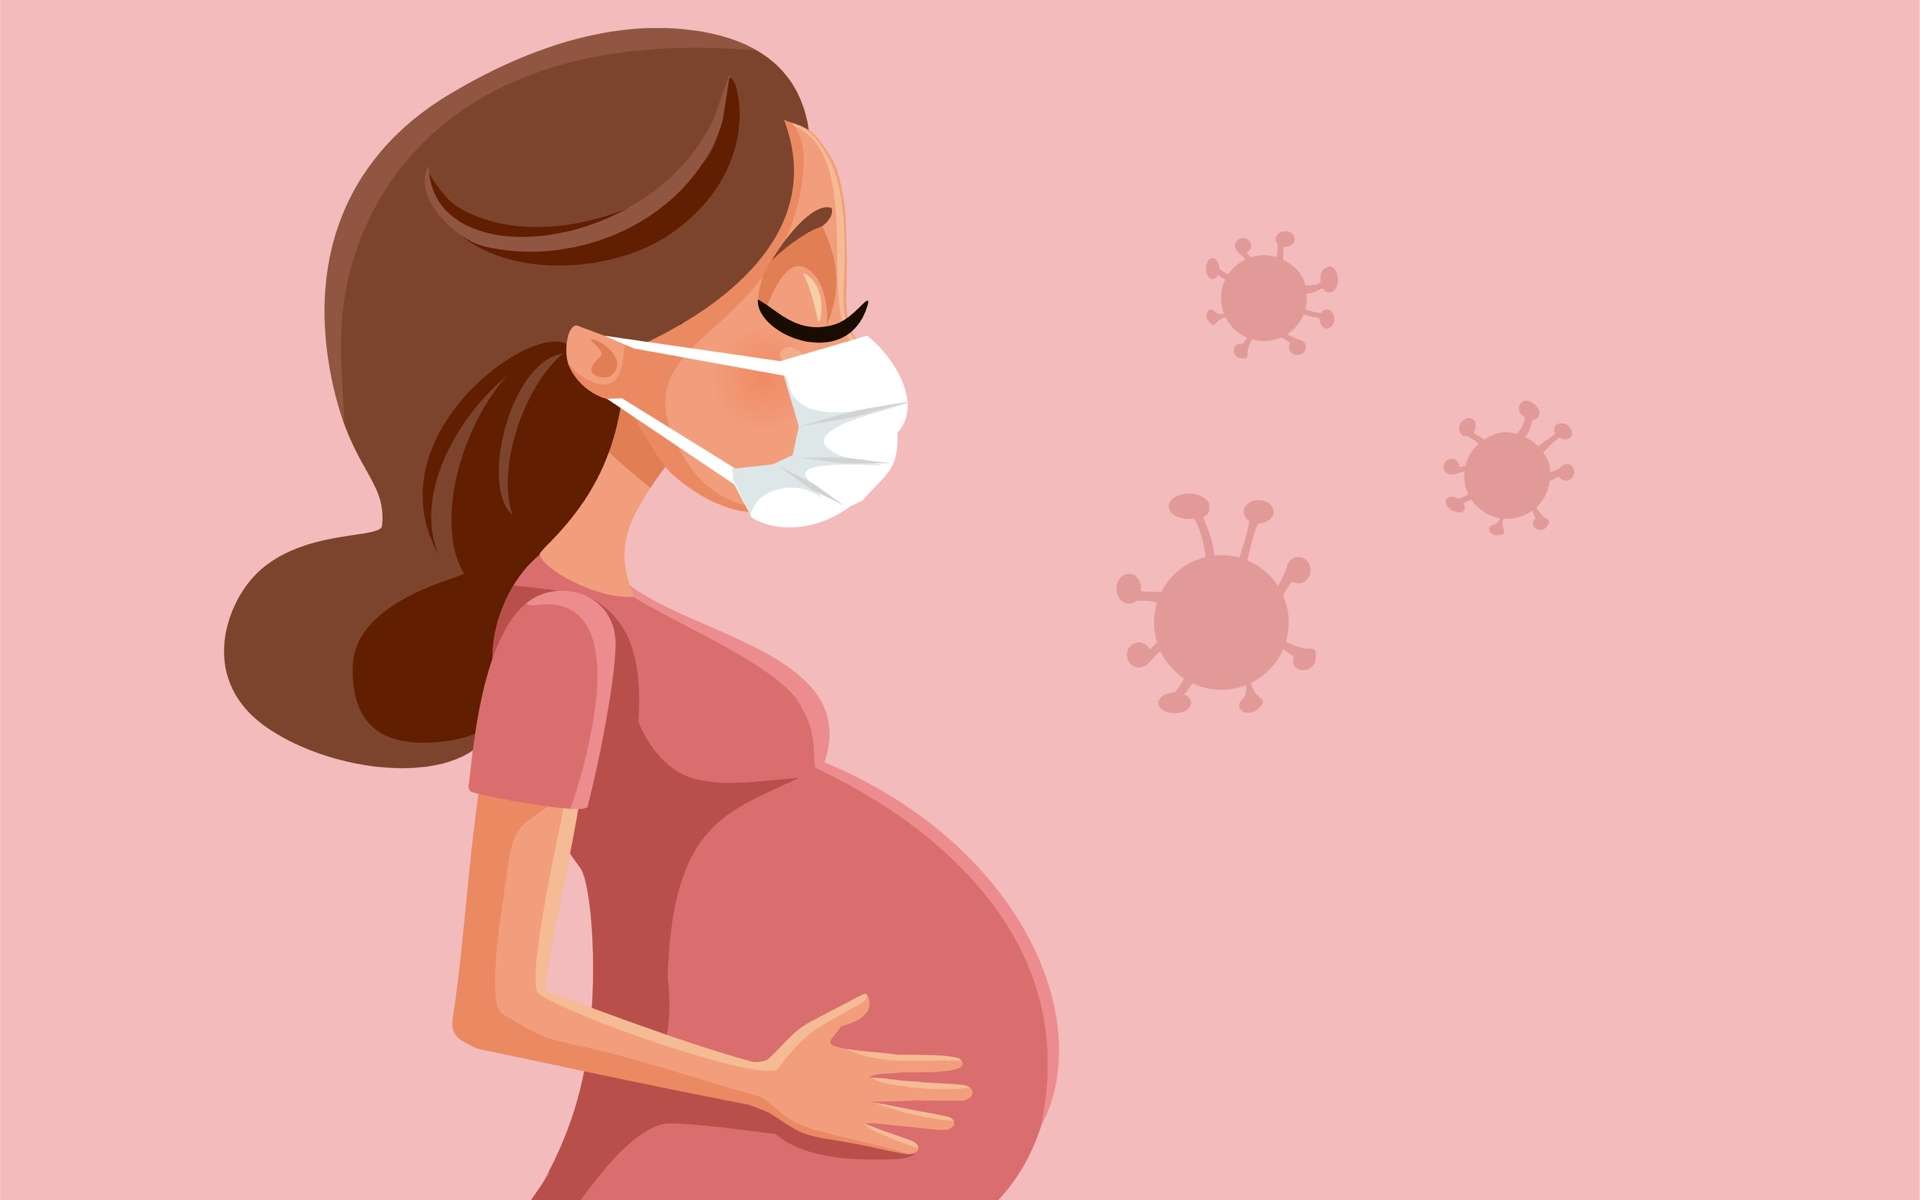 Une femme enceinte doit redoubler de précautions et appliquer les mesures d'hygiène. © nicoletaionescu, Adobe Stock